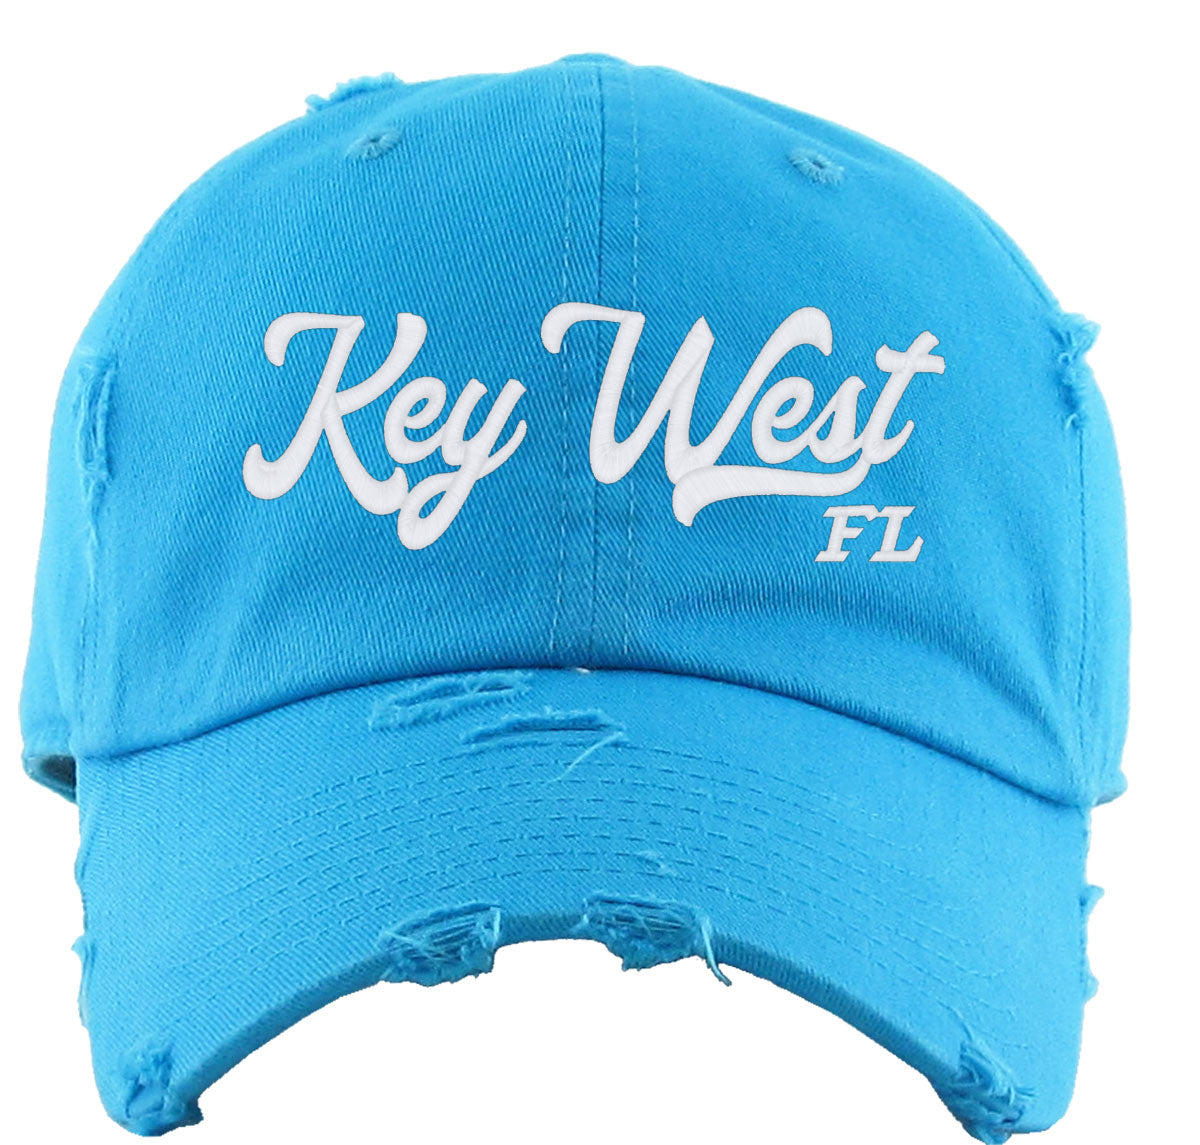 Key West Florida Vintage Baseball Cap